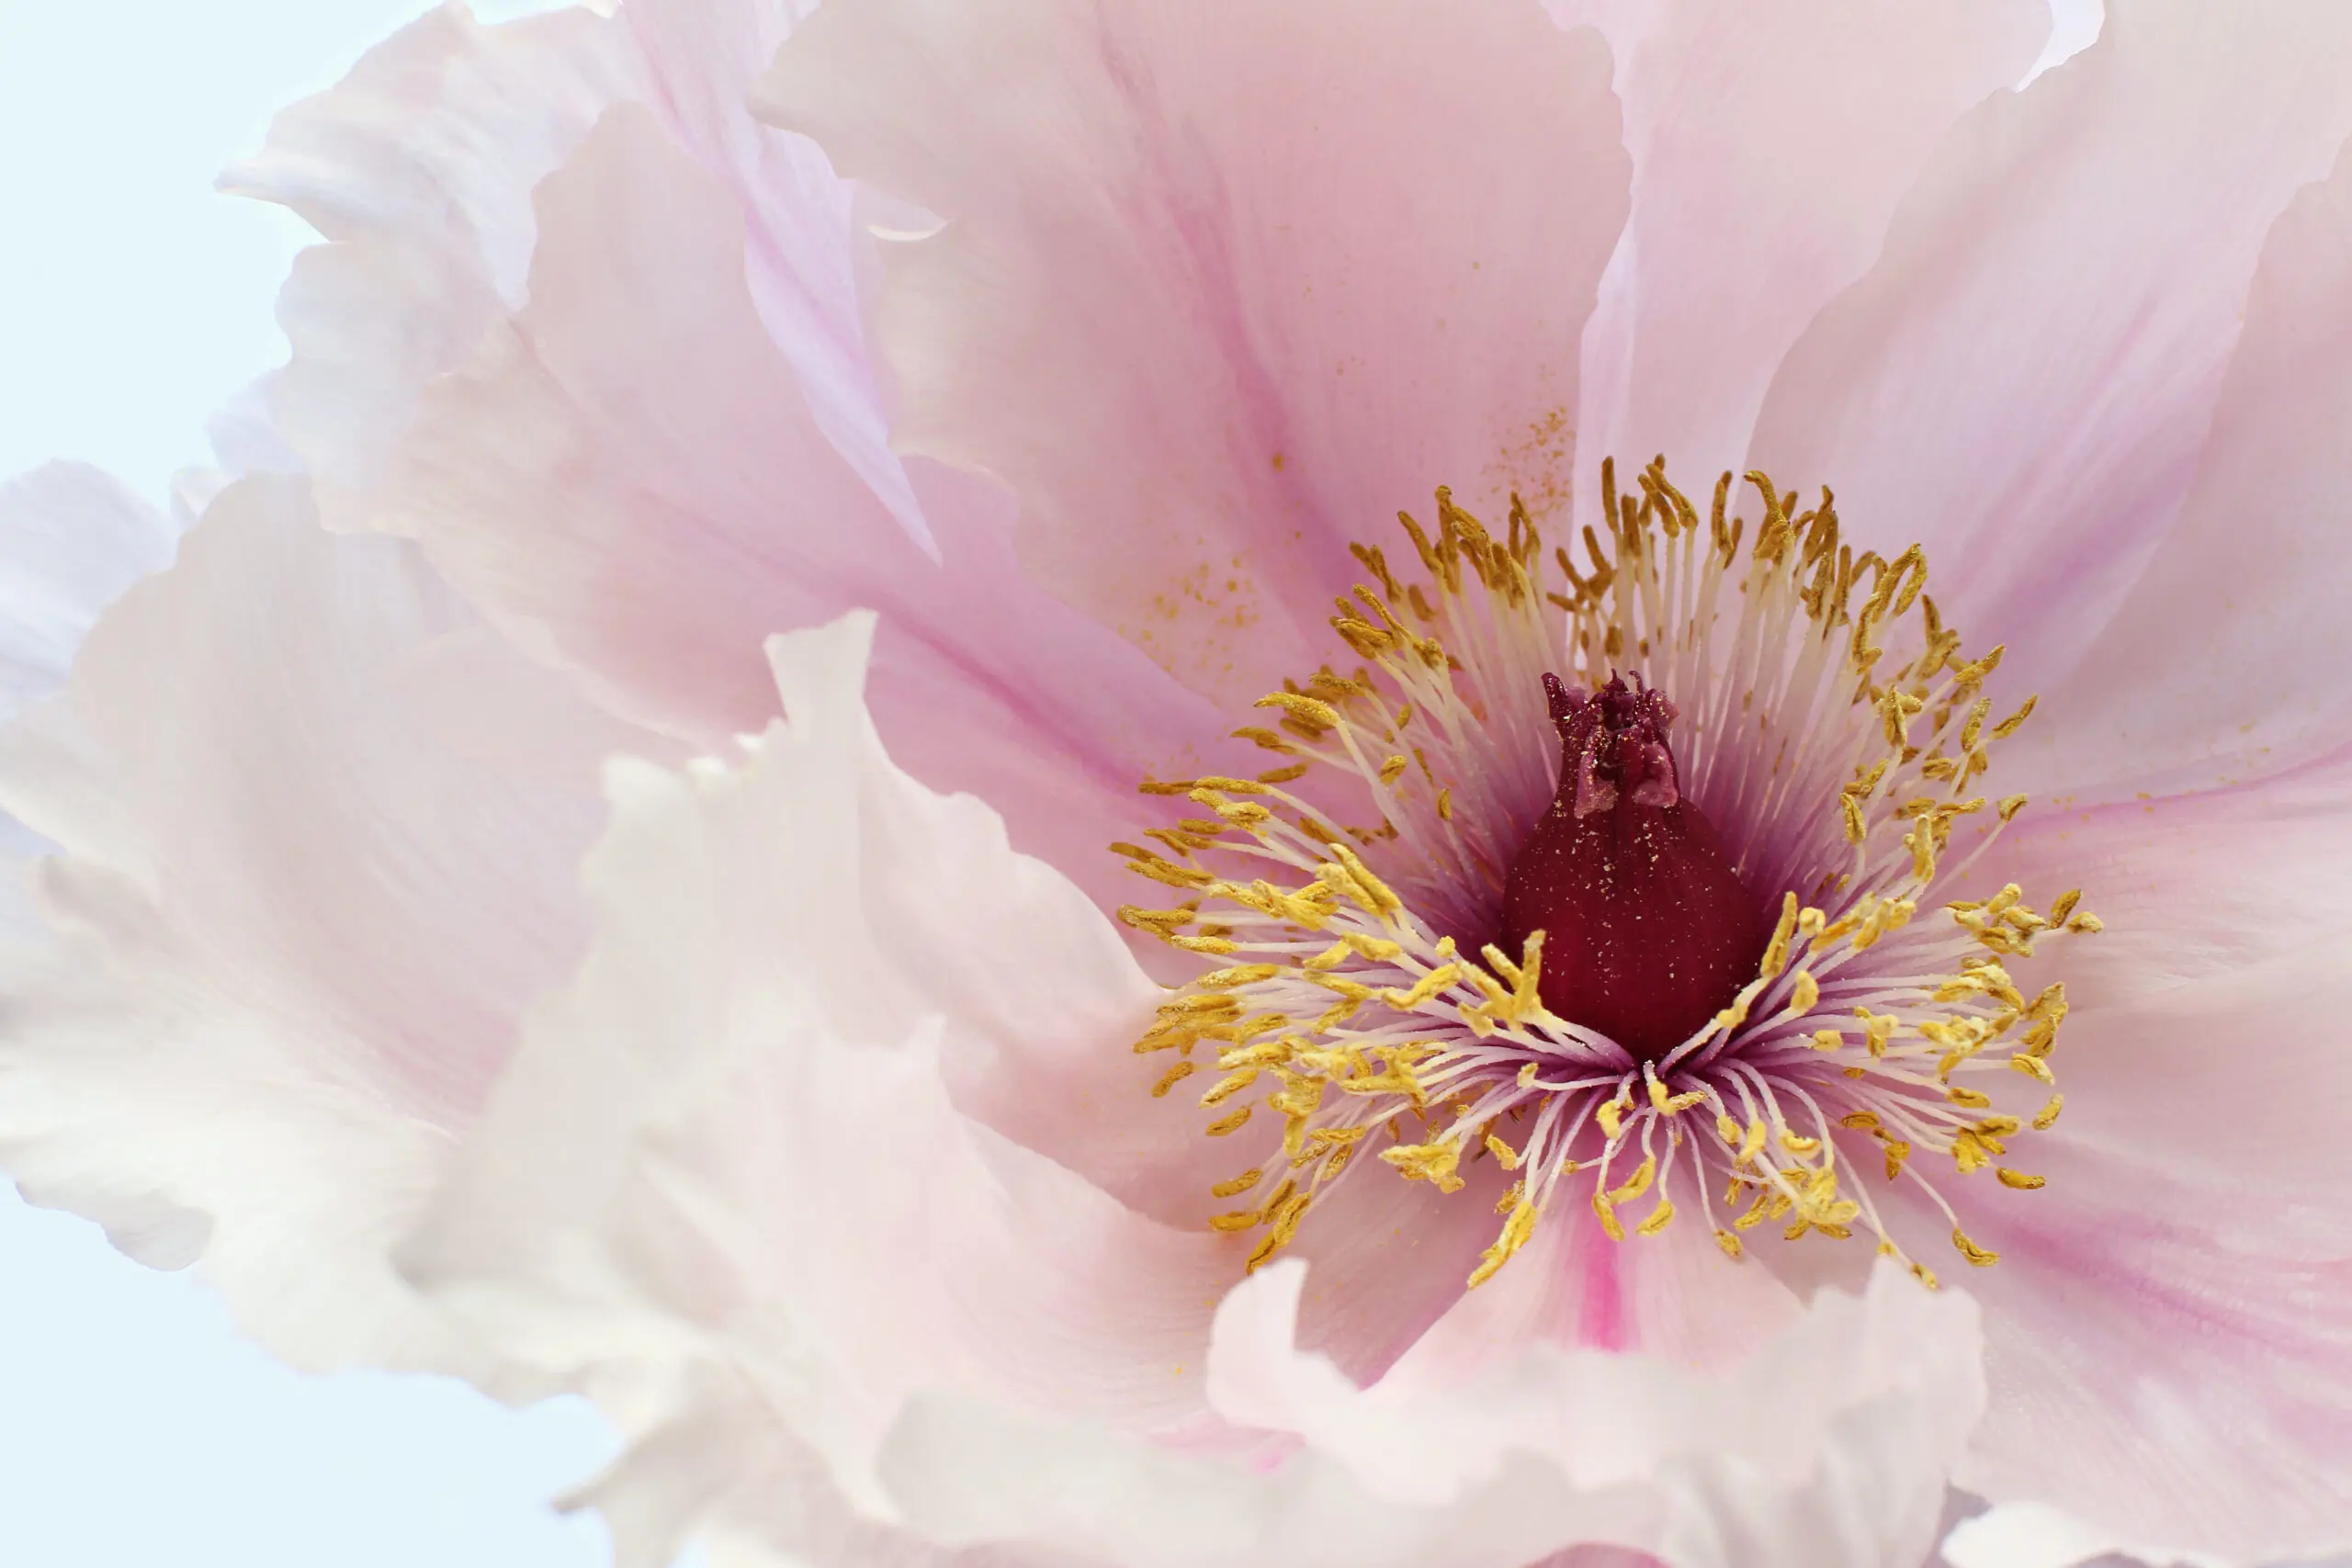 Wandbild (25134) Pink Tree Peony Flower by Alyson Fennell präsentiert: Details und Strukturen,Natur